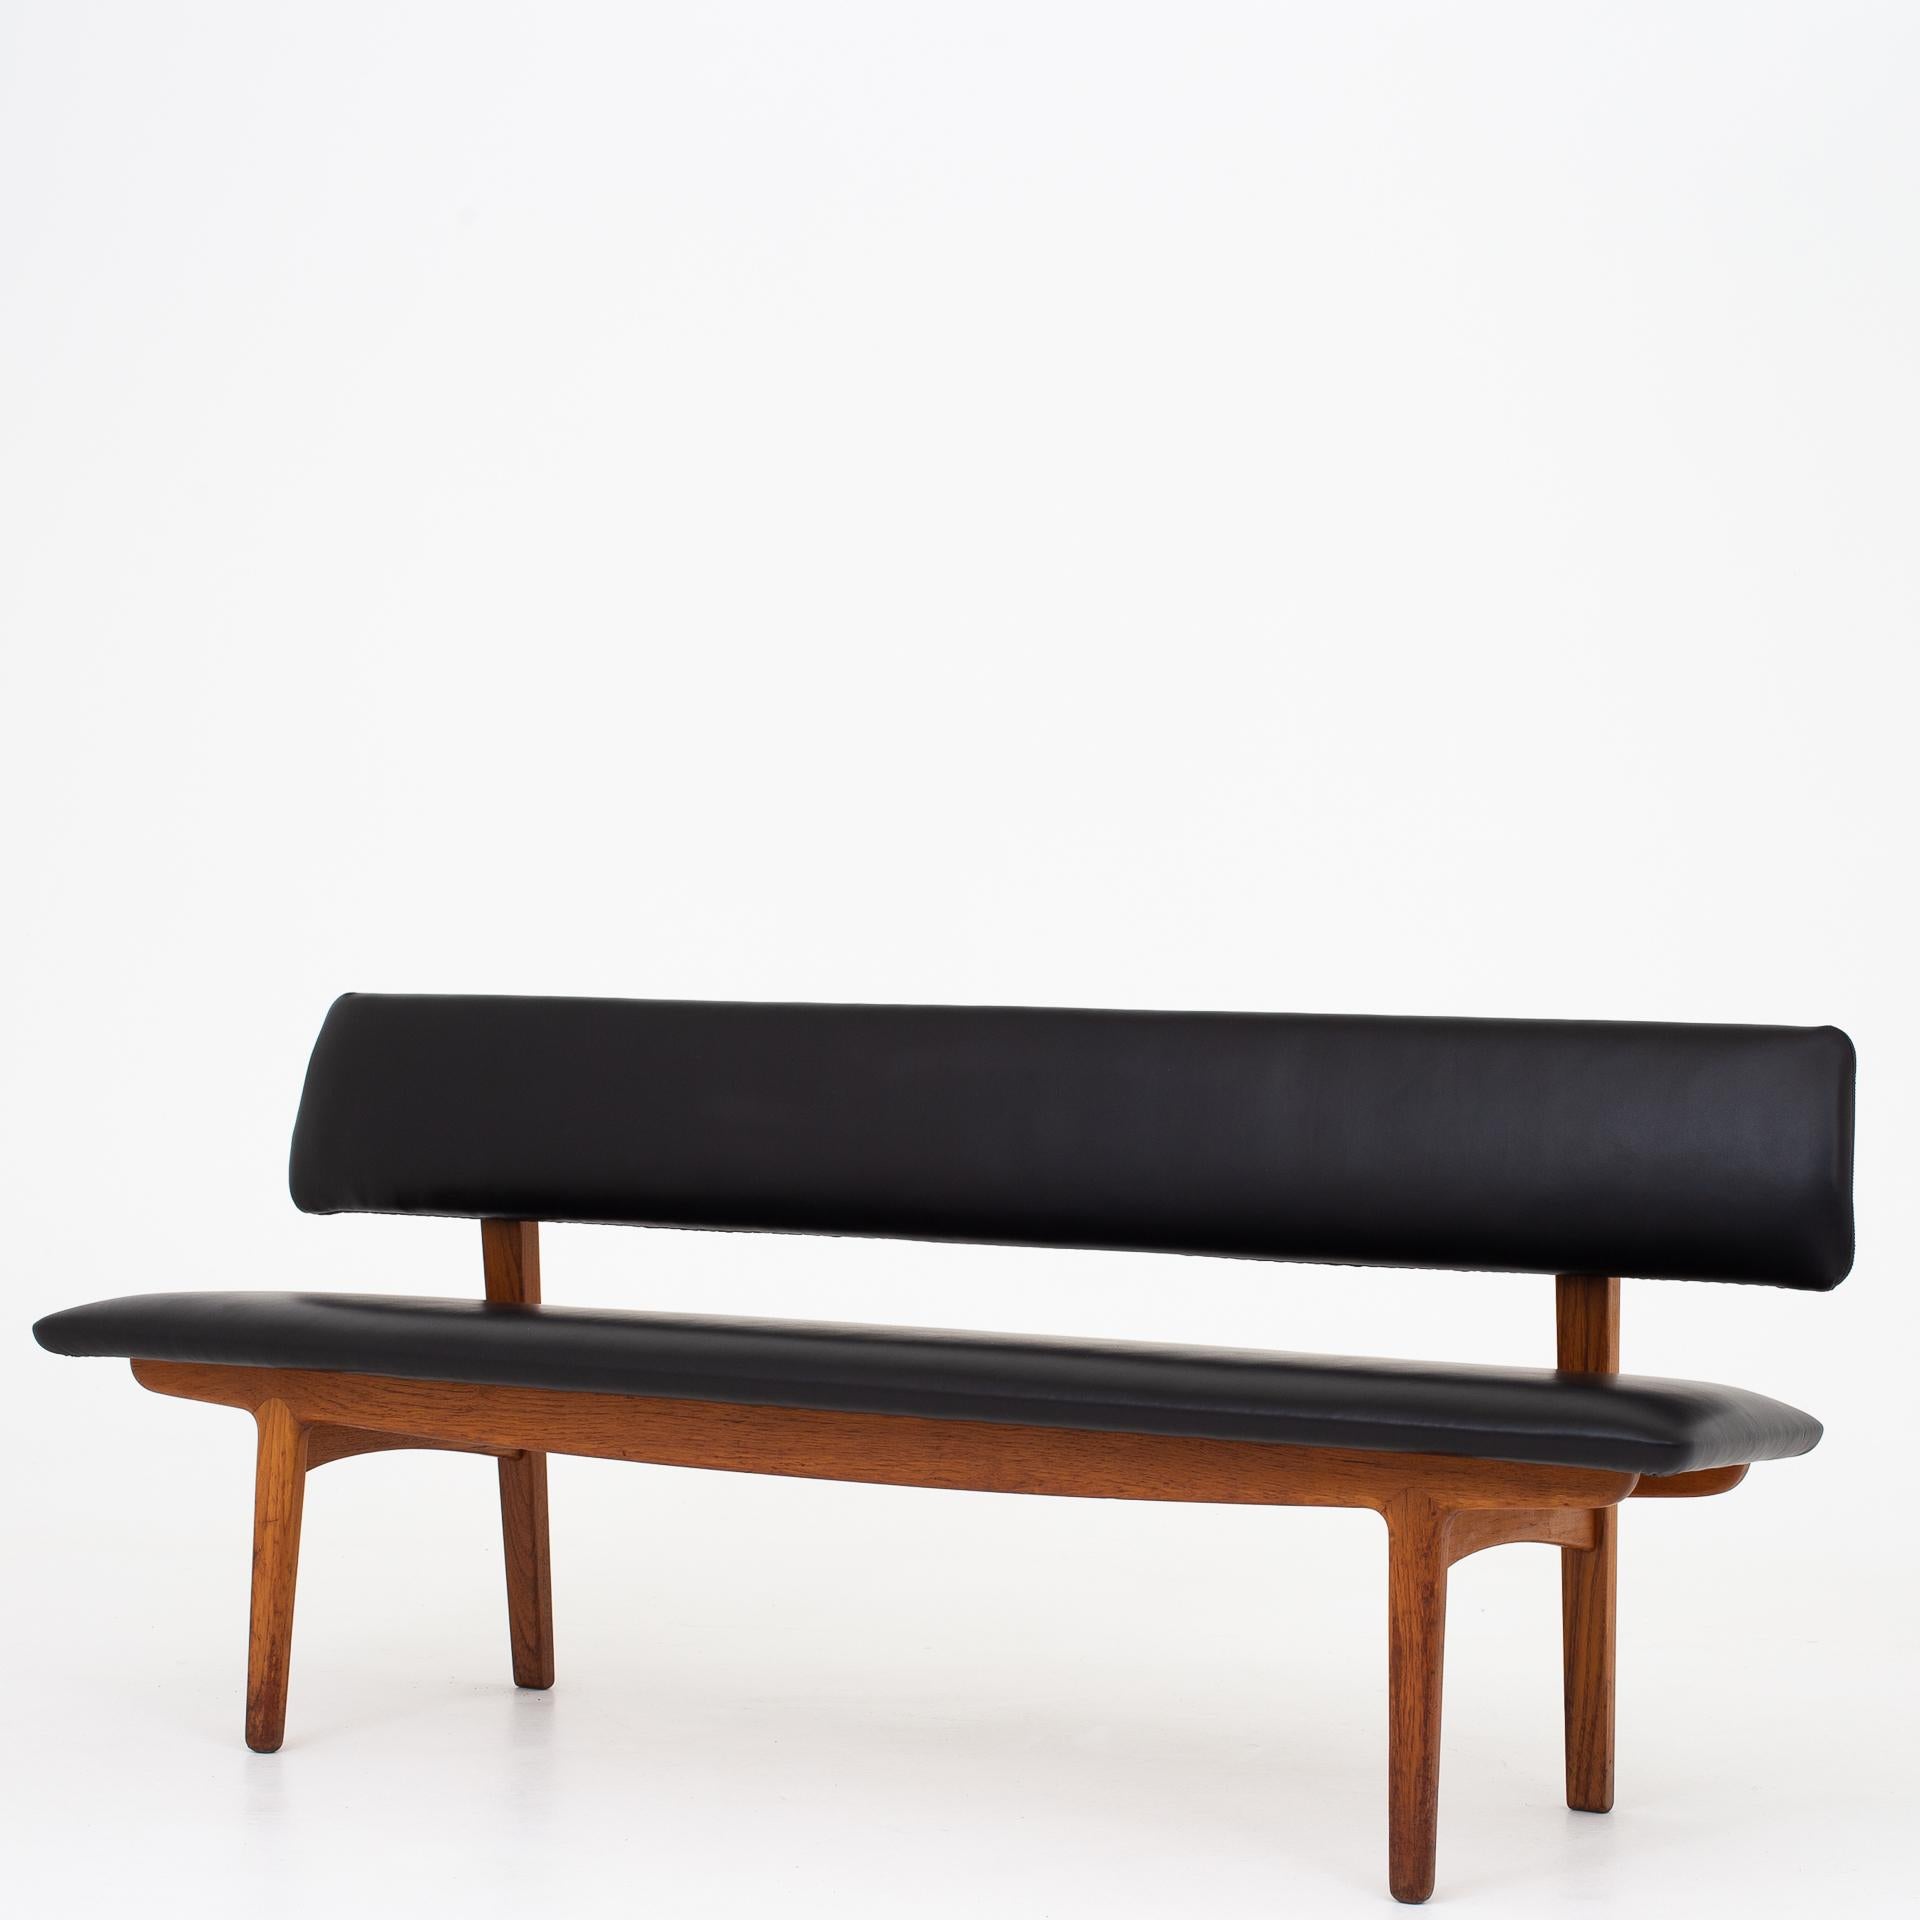 Reupholstered bench in teak with black canyon leather. Maker Næstved Møbelfabrik.